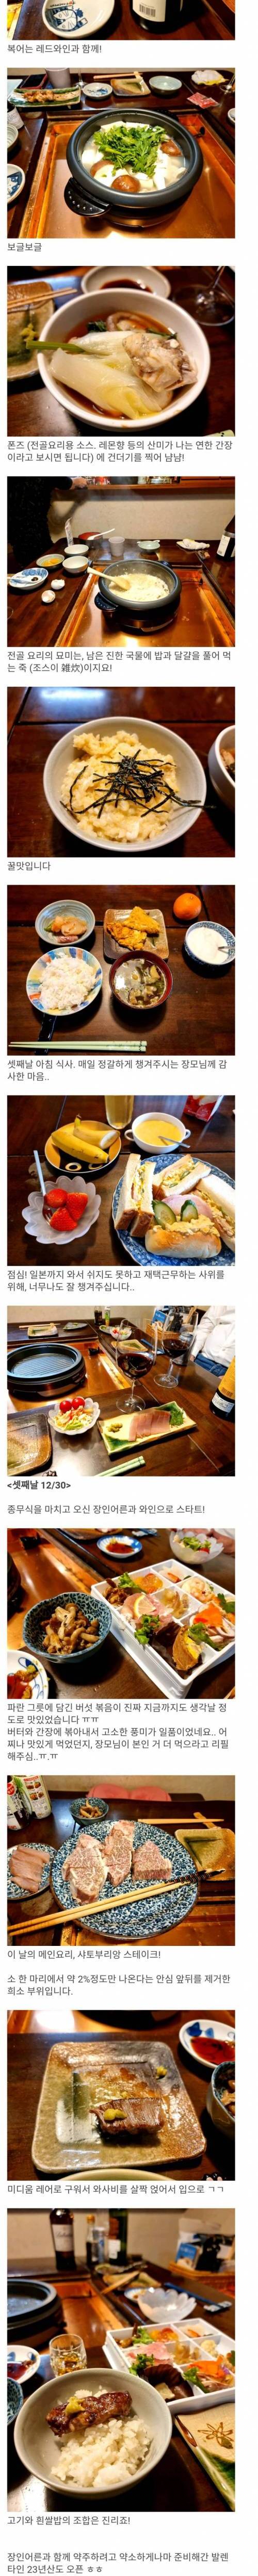 [스압] 일본 장모님댁에서 먹은 요리들 모음집